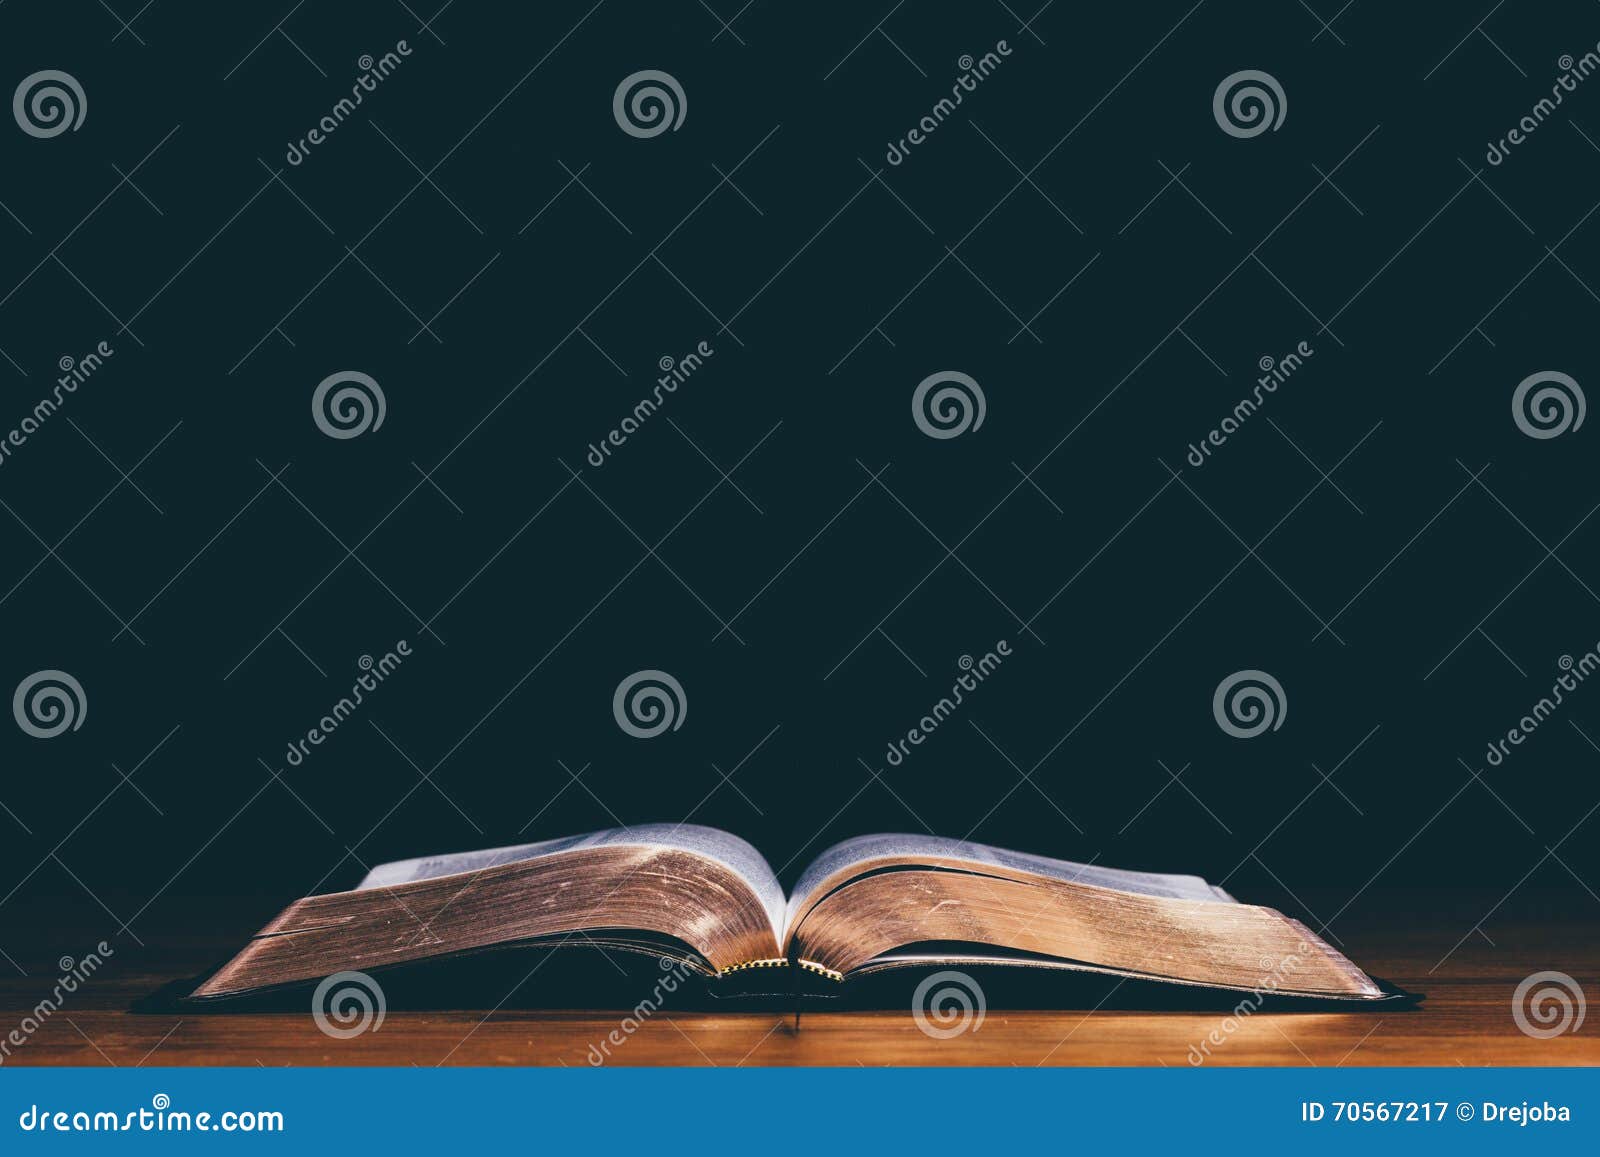 open bible